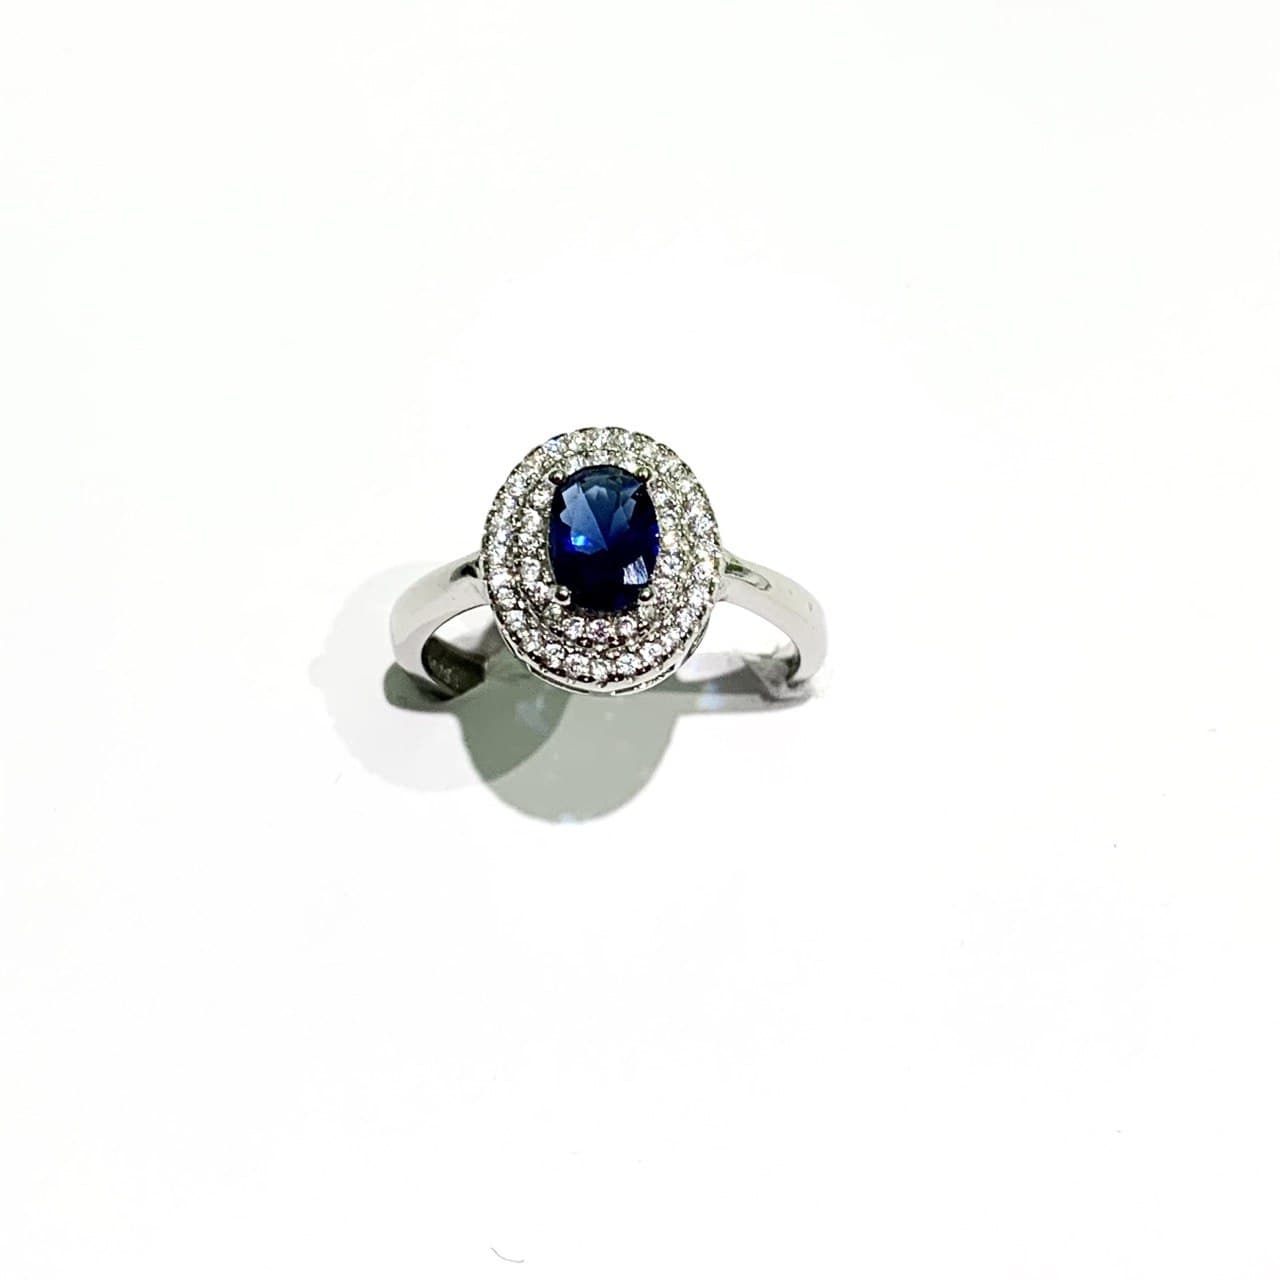 Anello in argento con zircone ovale colorato circondato da due giri di zirconi bianchi.  Disponibile in più colori: rubino, smeraldo, turchese e zaffiro.  Misure regolabili in ogni anello da 17 a 21.